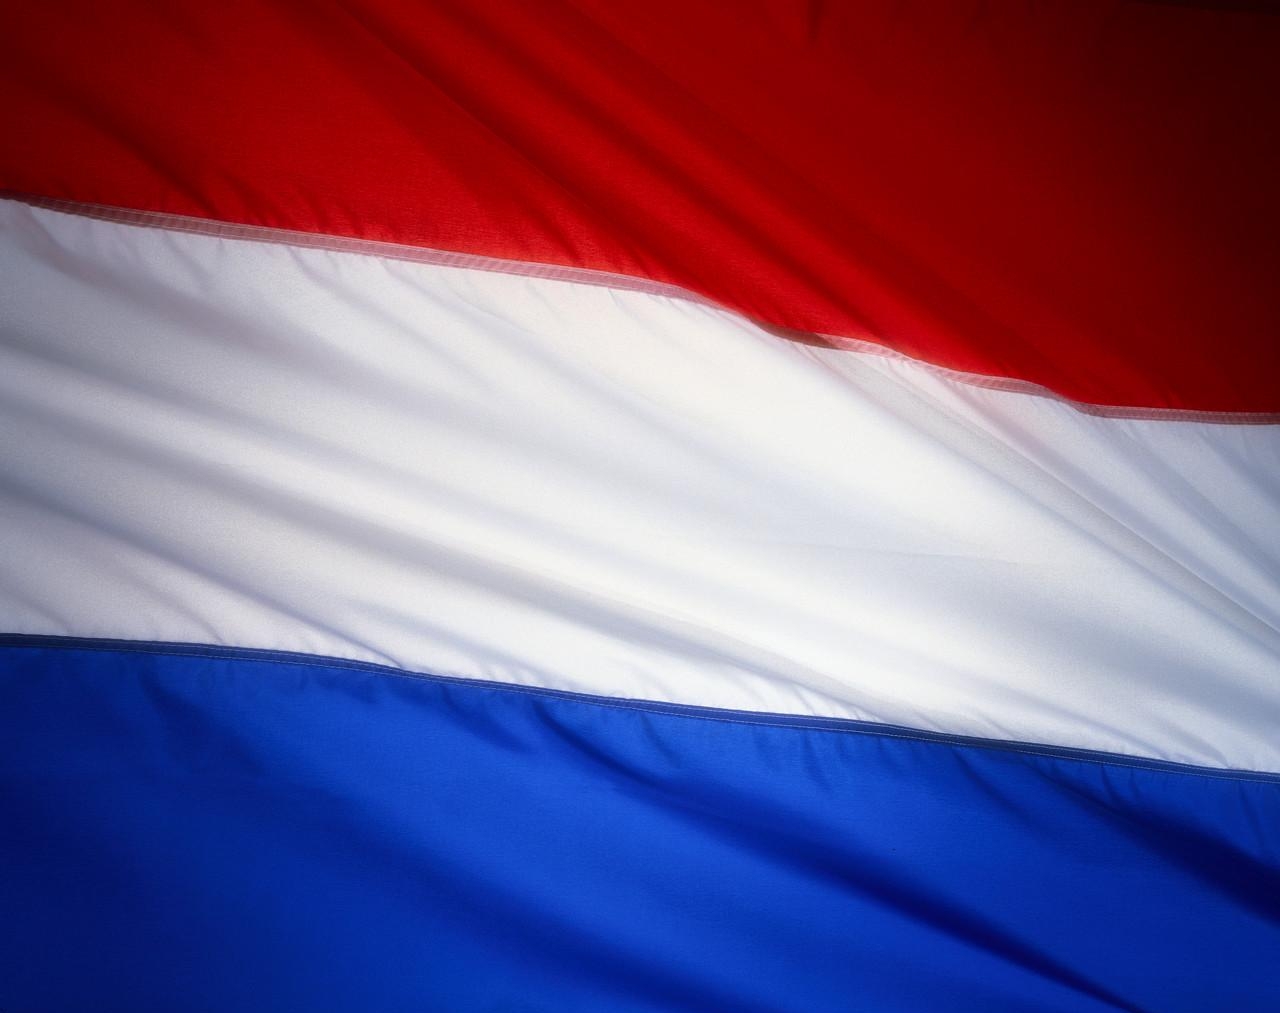 флаг нидерландов фото и флаг россии